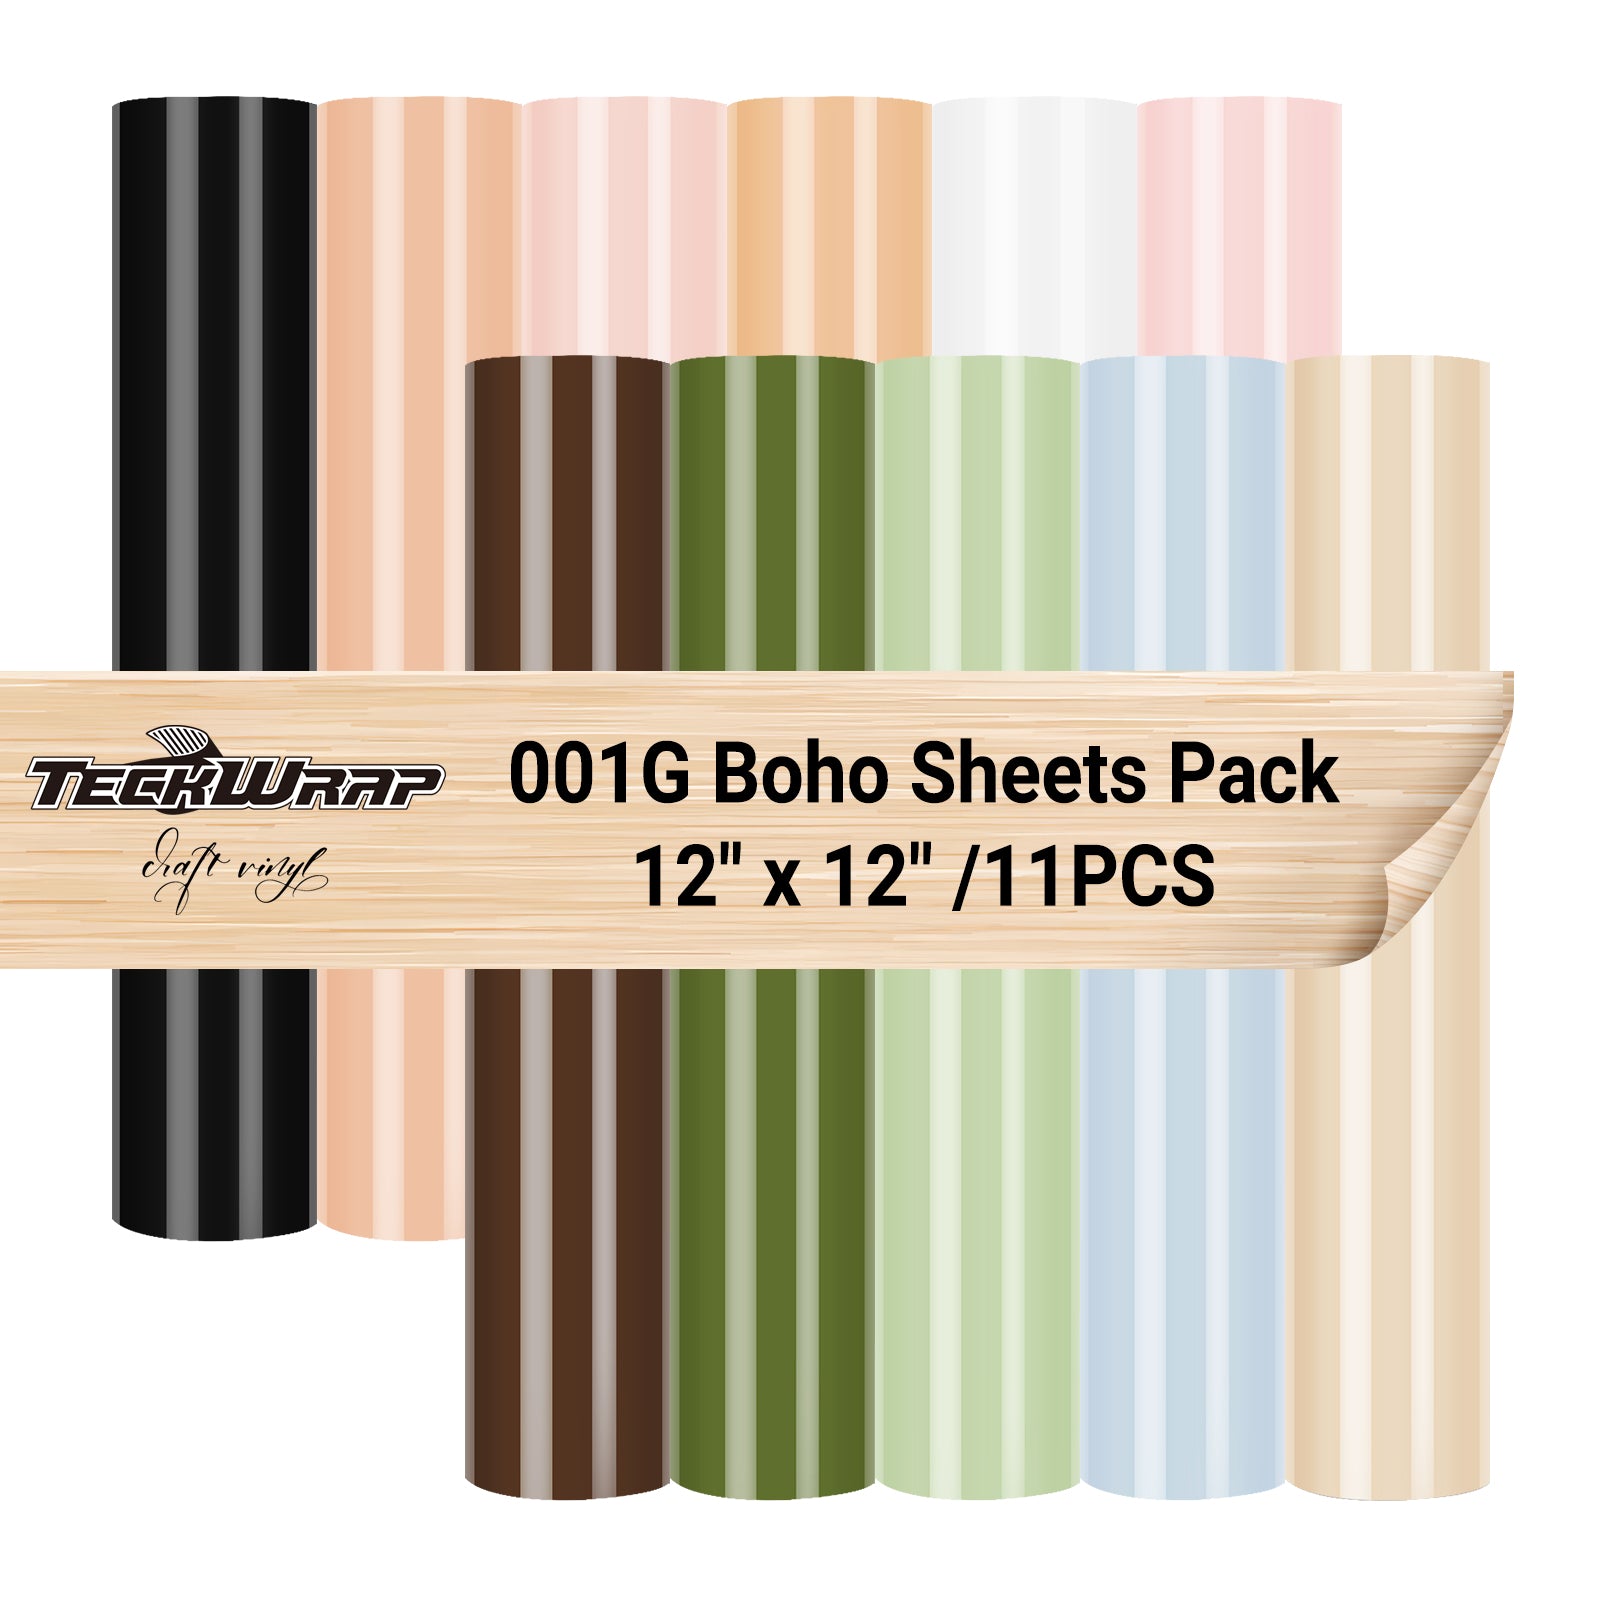 001G Boho Color Sheets Pack